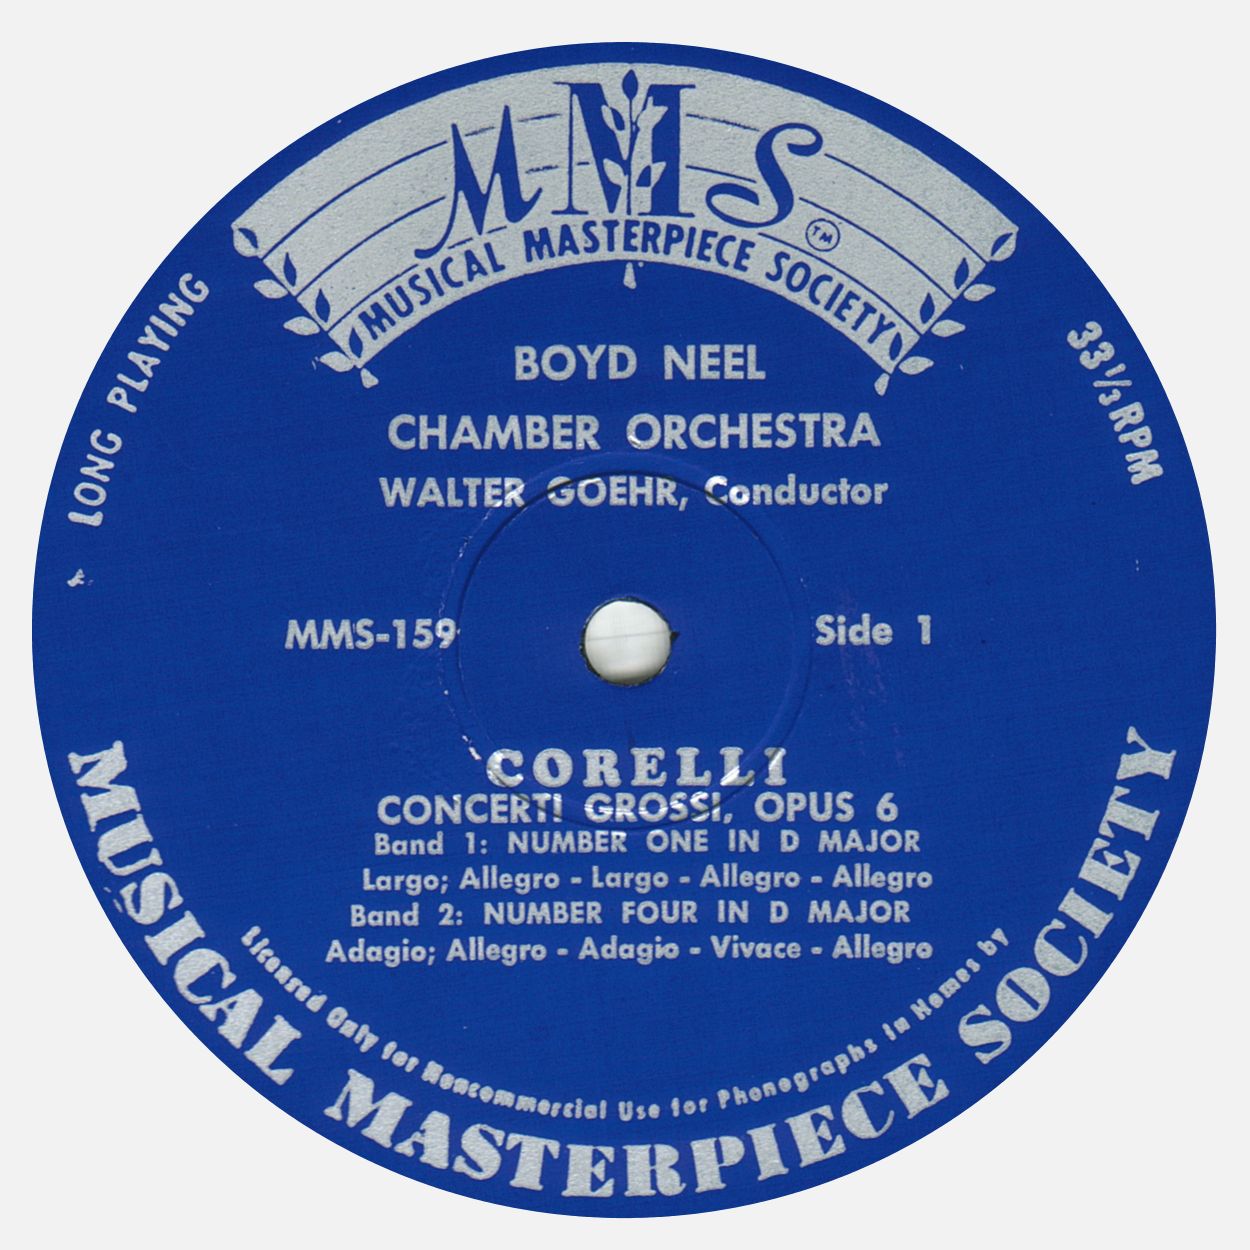 Étiquette recto du disque «Musical Masterpiece Society» MMS-159, cliquer pour une vue agrandie